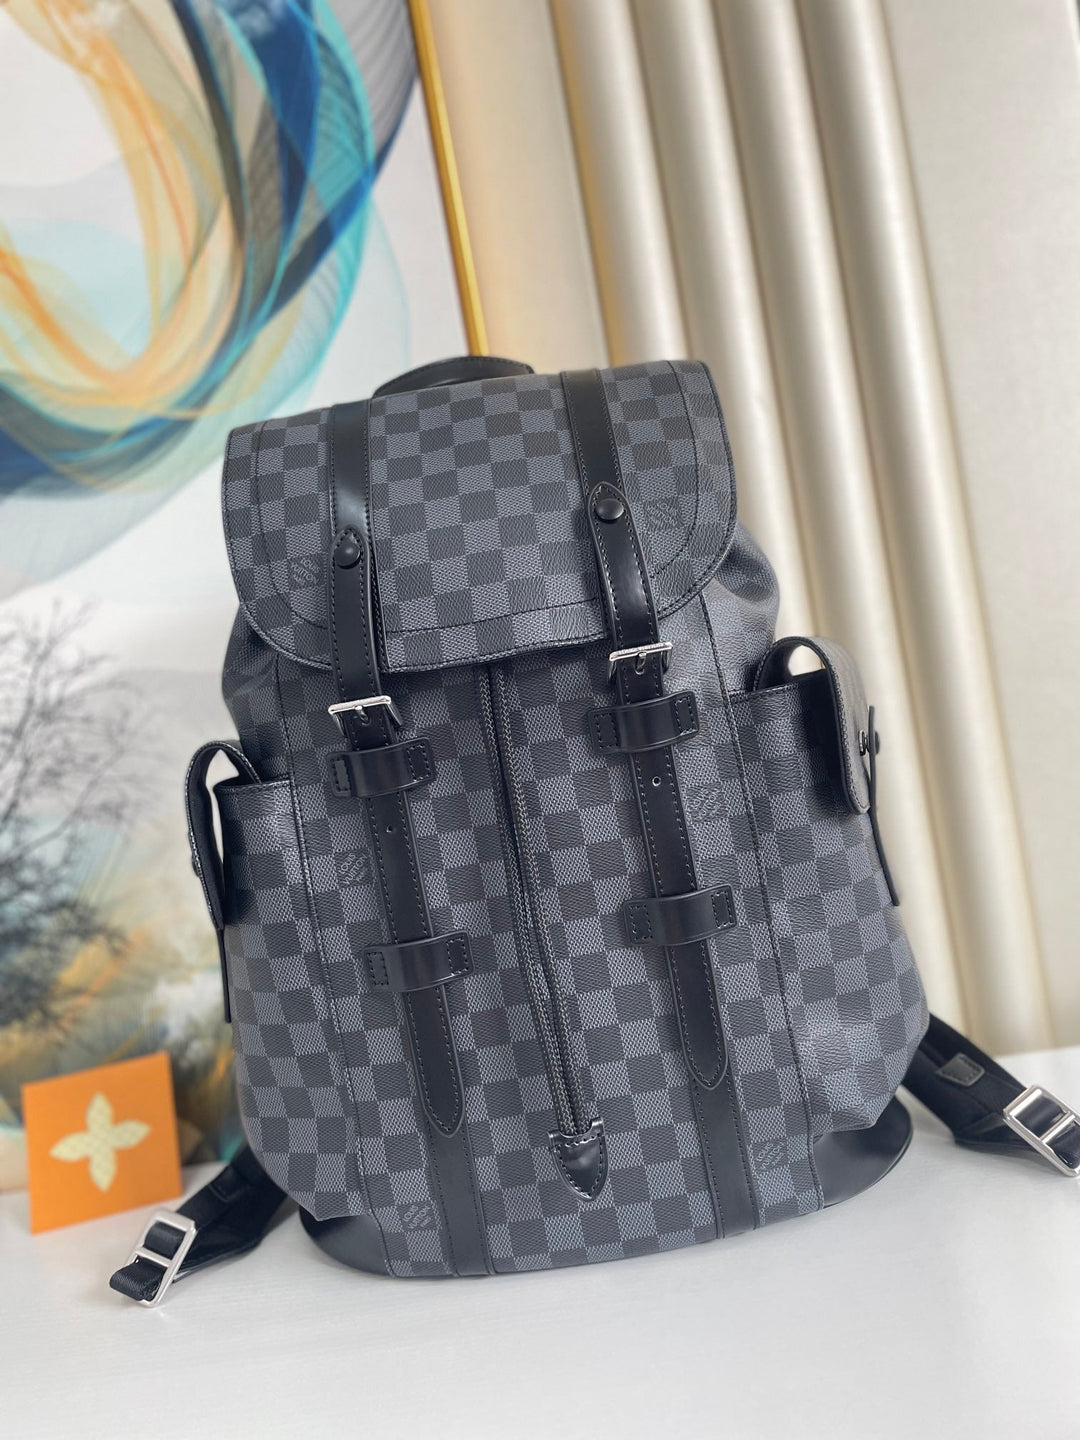 LV Christopher PM Damier Graphite For Men, Bags, Backpack 17.3in/44cm LV N41379